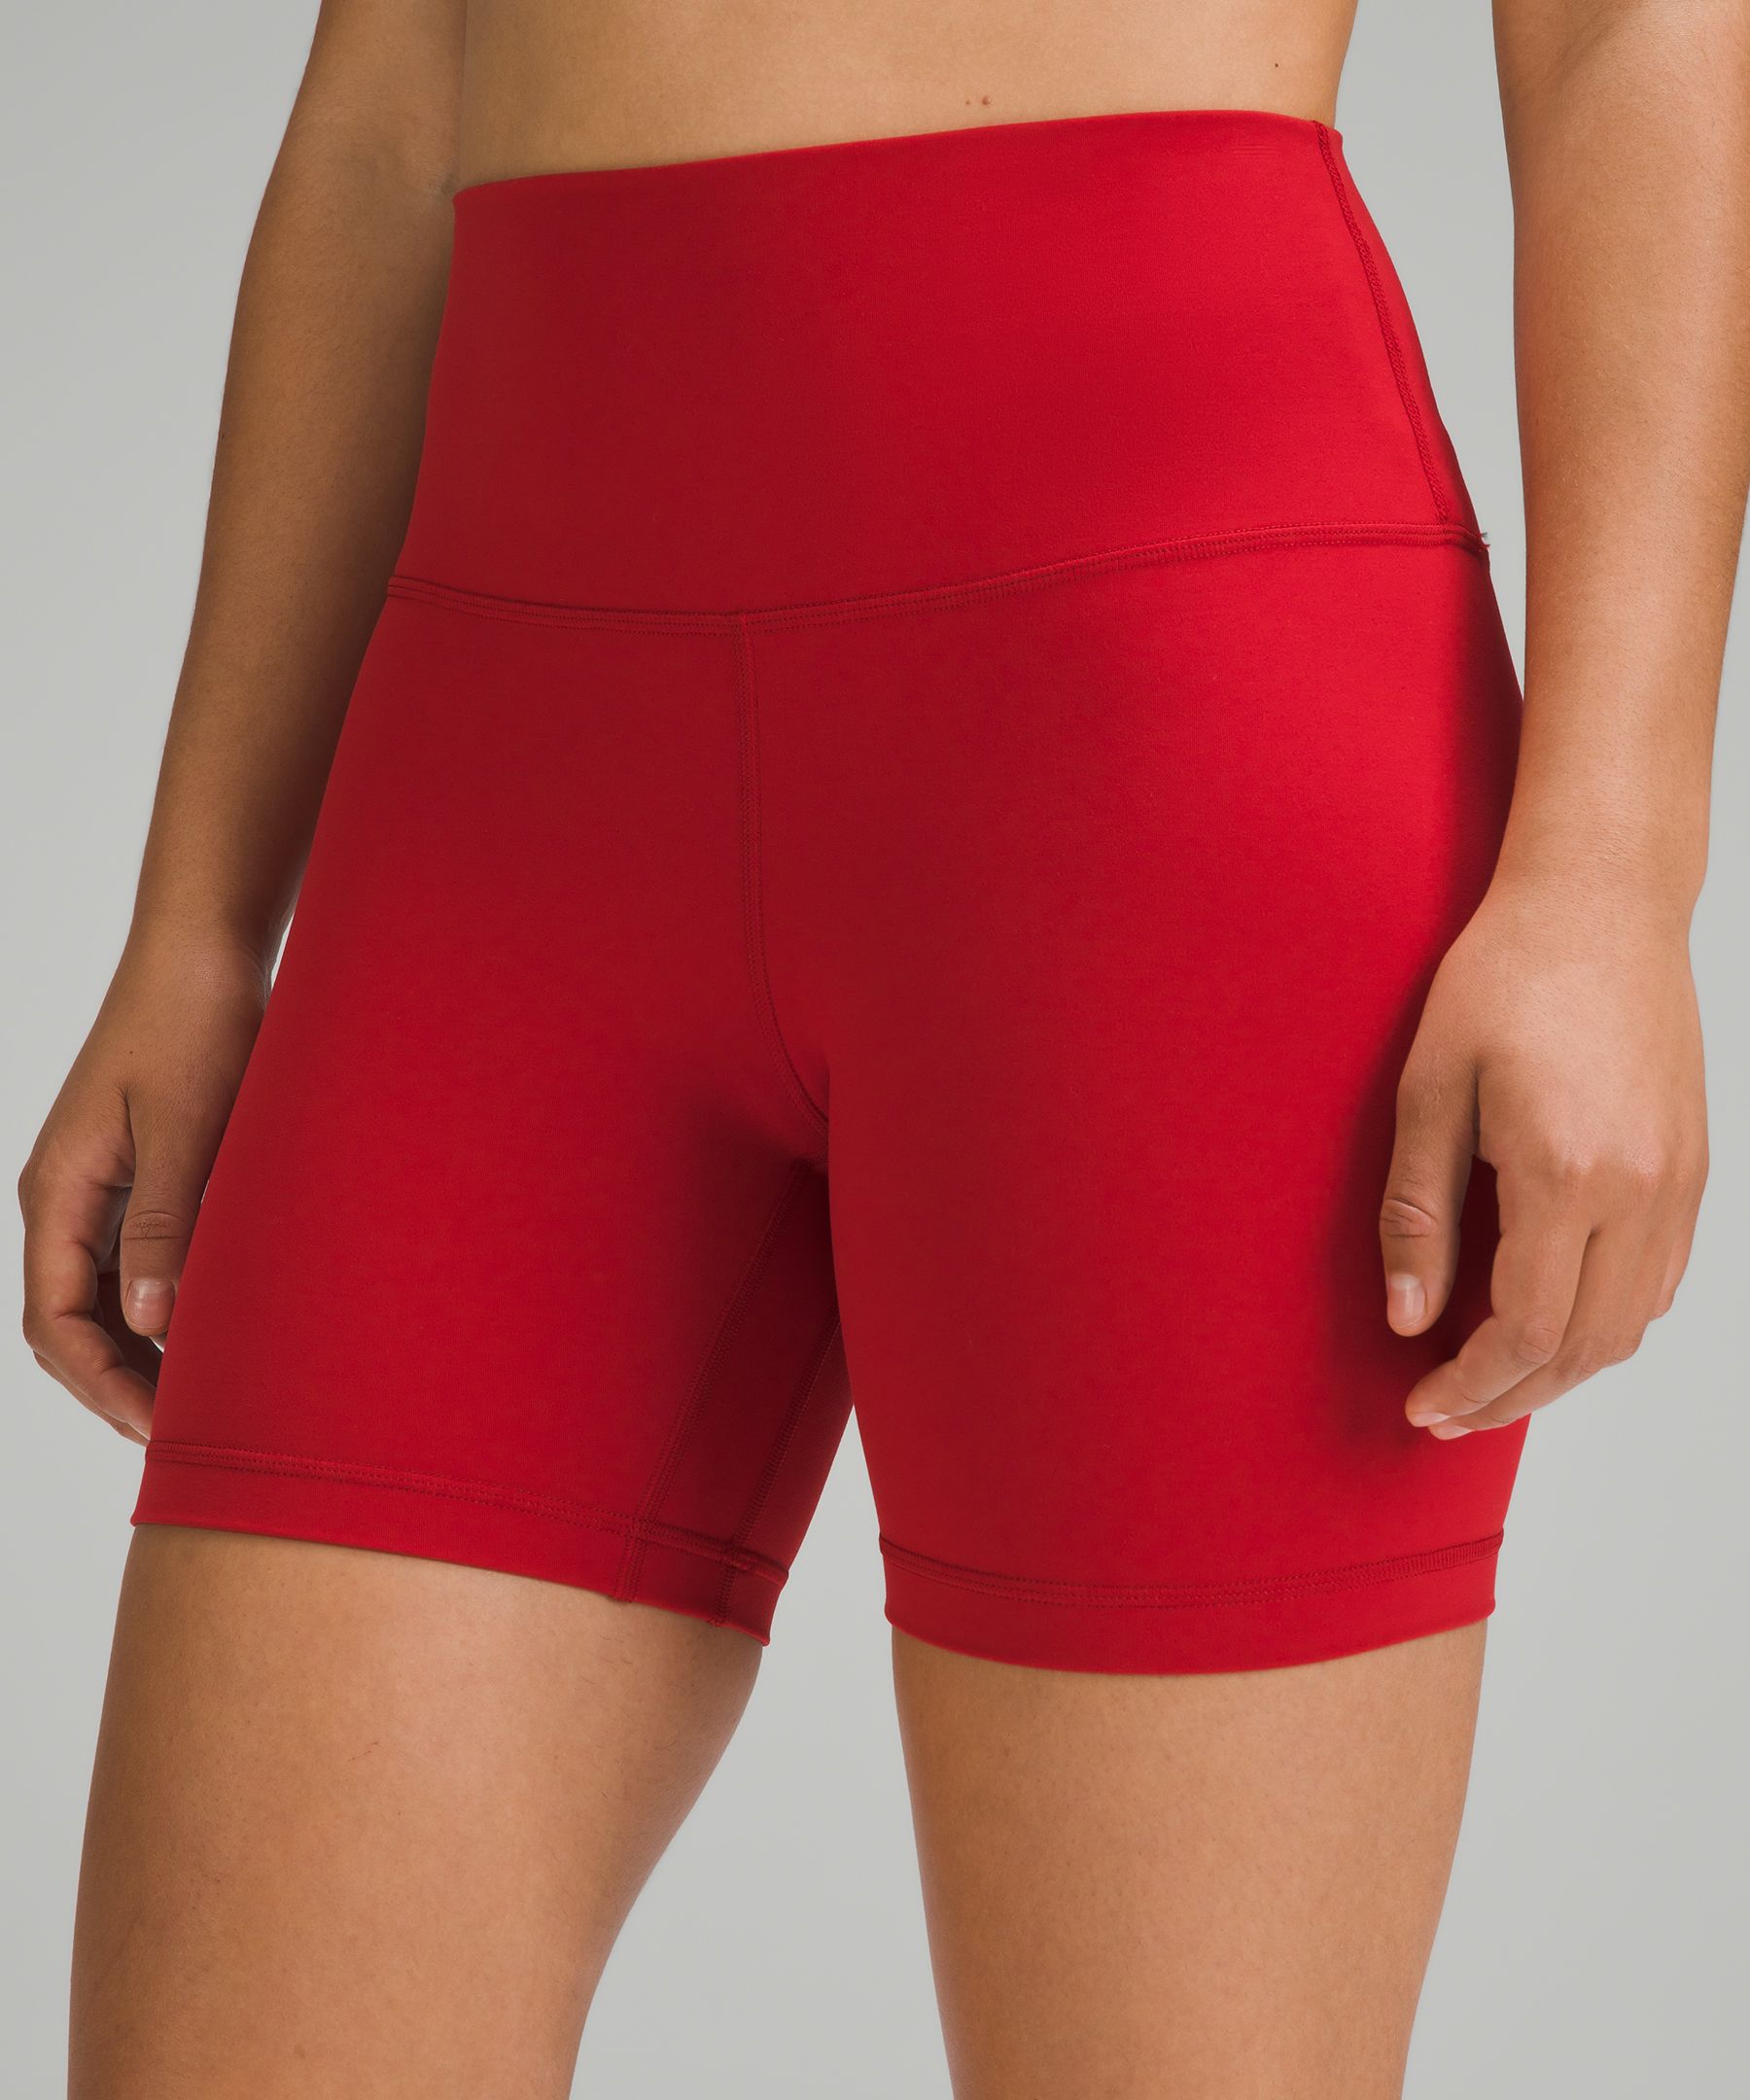 lululemon Align™ High-Rise Short 6, Women's Shorts